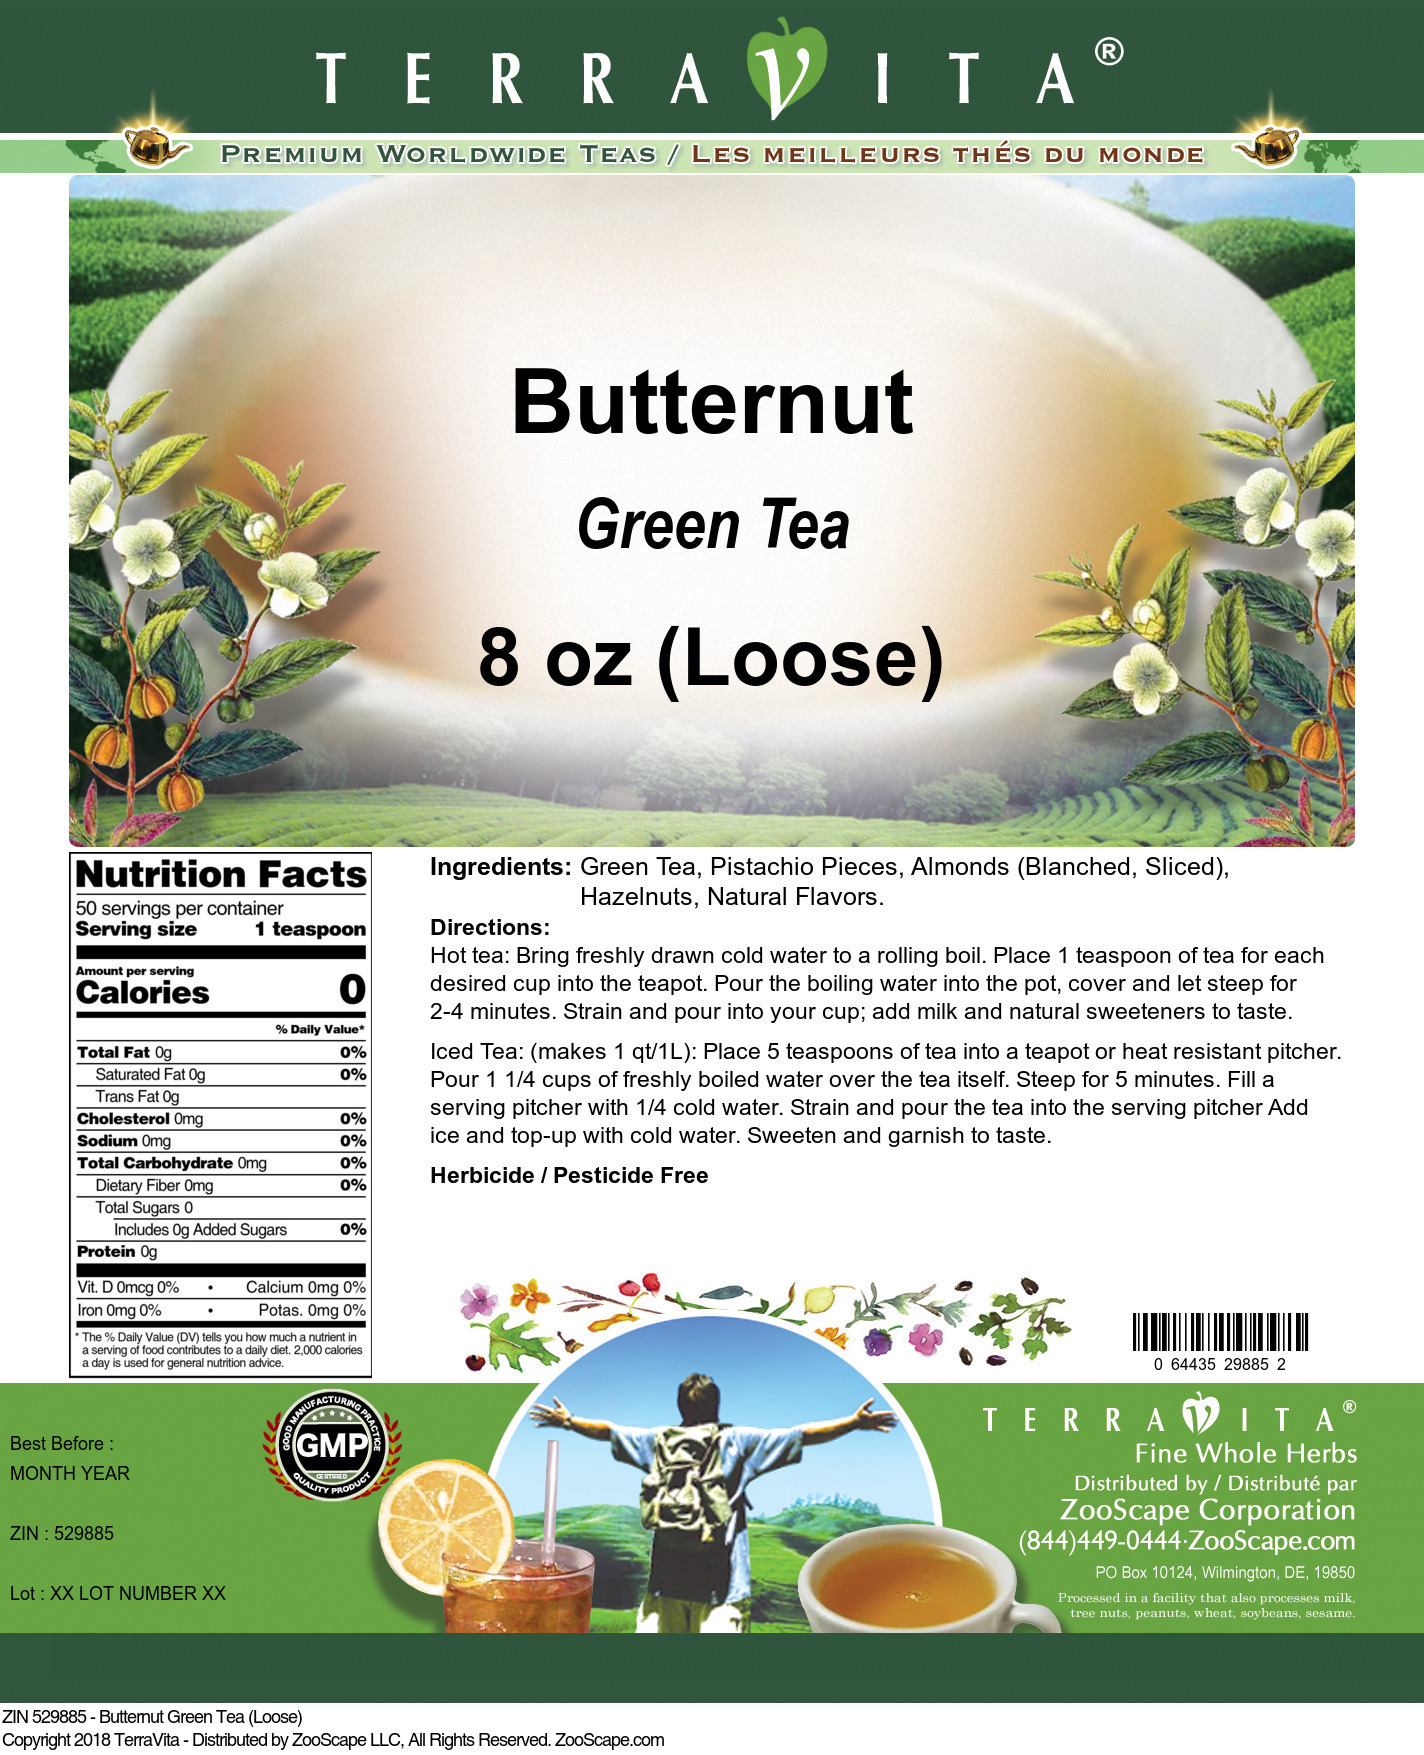 Butternut Green Tea (Loose) - Label